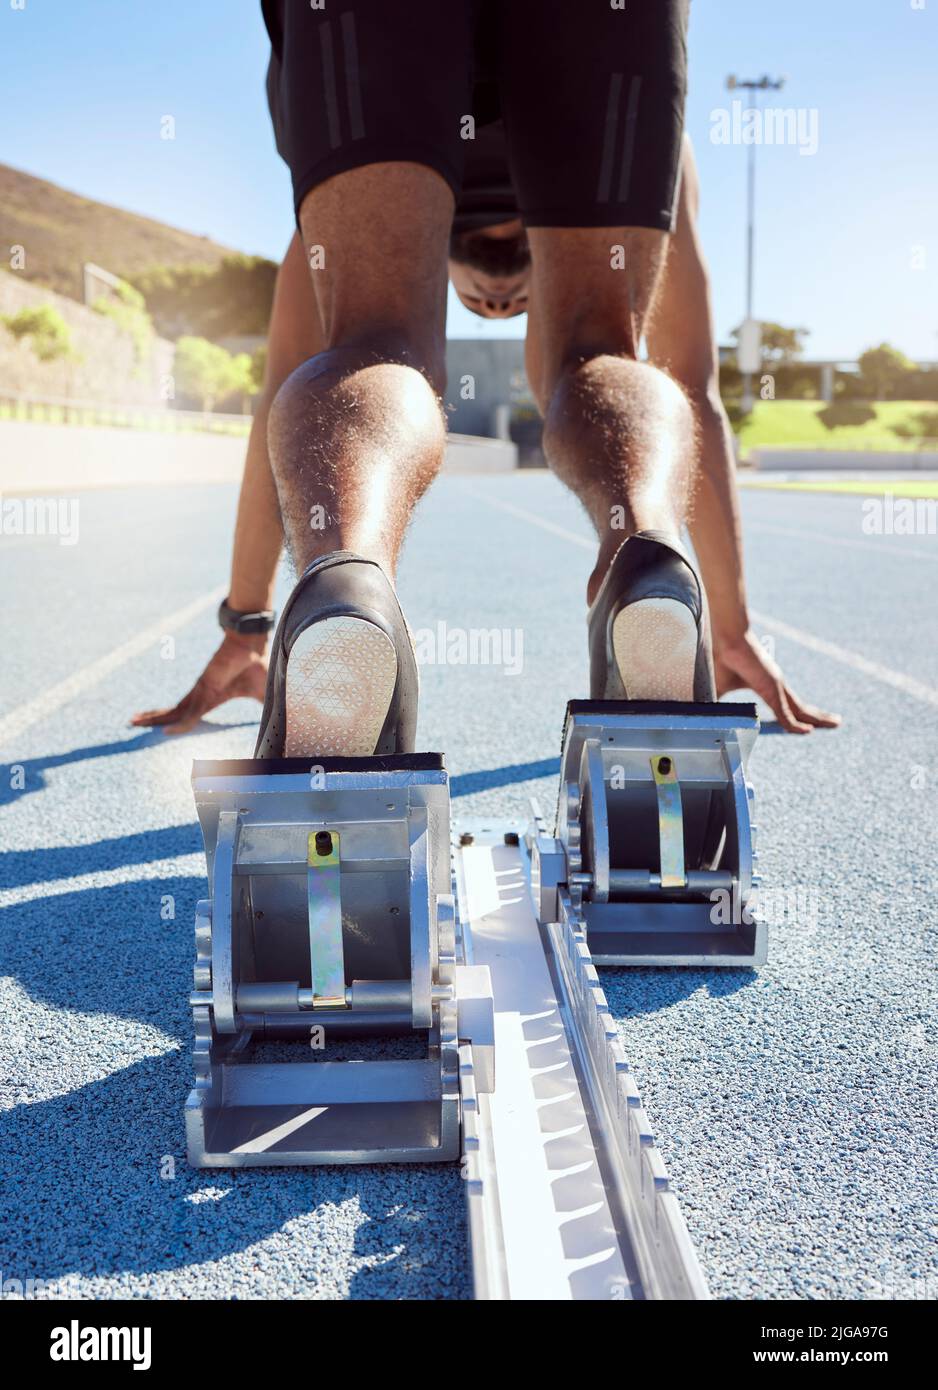 Füße des Athleten in Startposition auf einer Laufstrecke. Ein männlicher Track- und Feldläufer, der bereit ist, den Startblock zu verlassen, um seinen Sprint zu starten Stockfoto